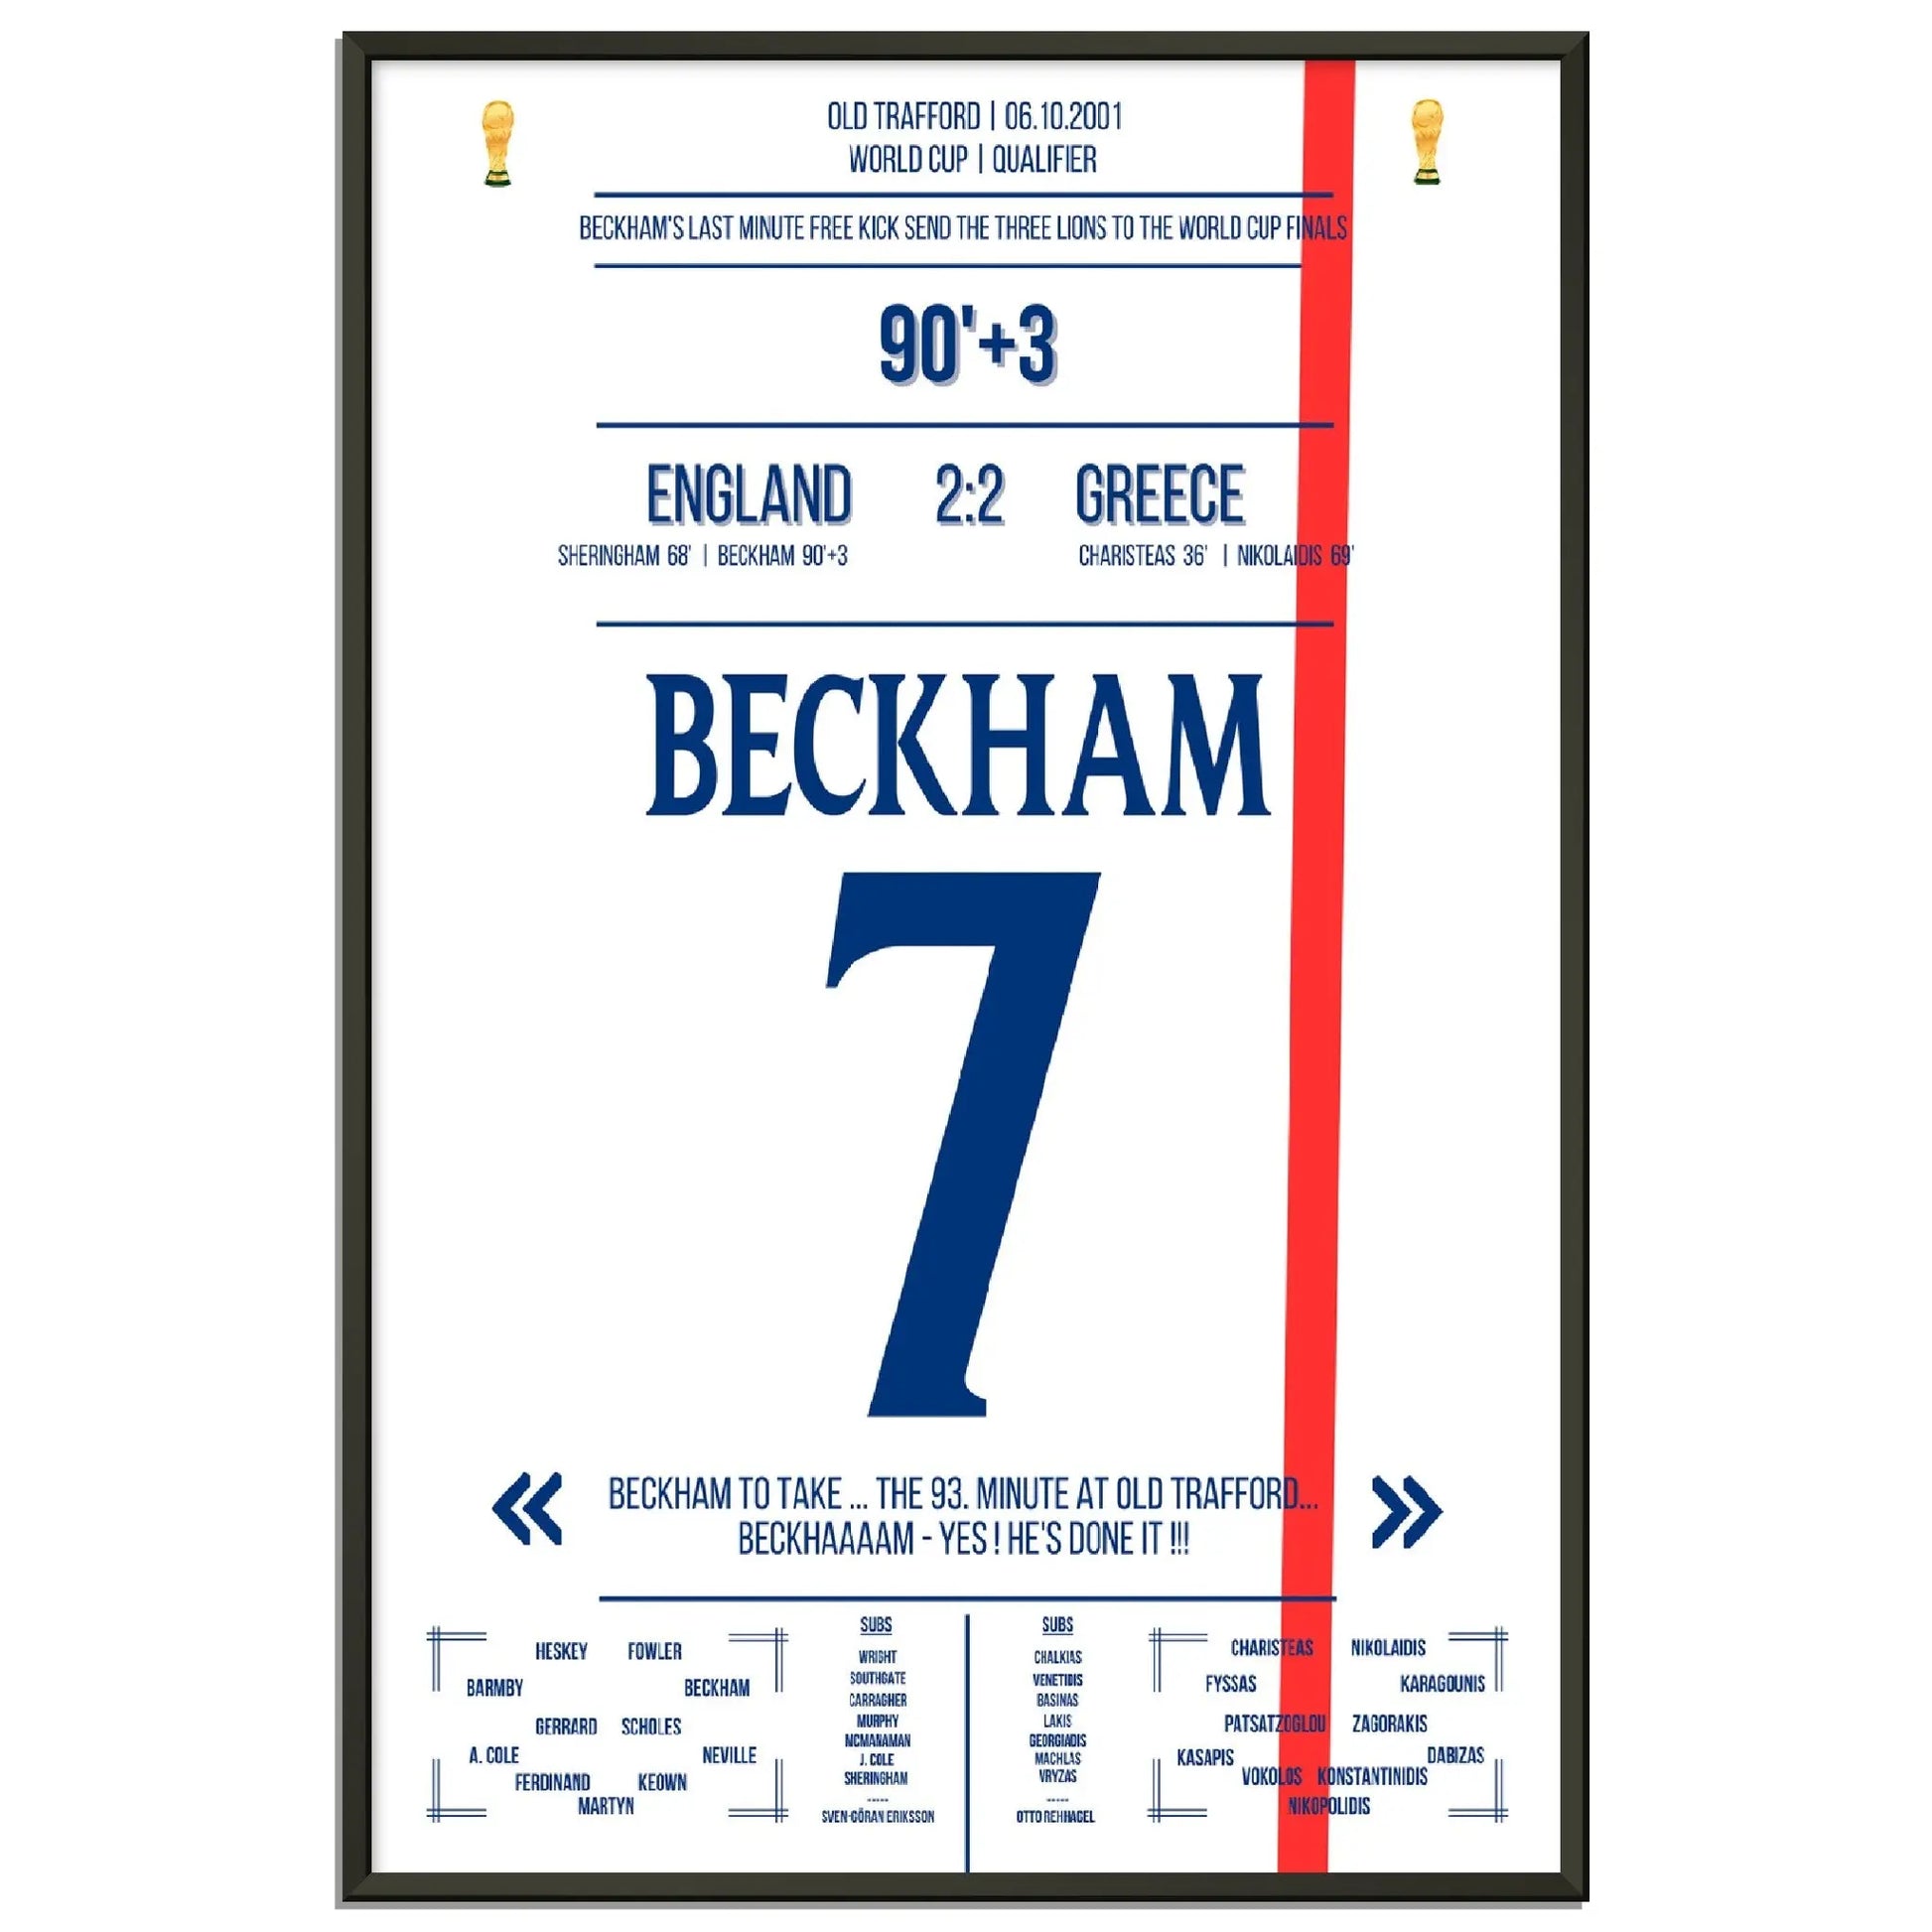 Beckhams Freistoss in letzter Minute - Qualifikation zur WM 2002 England - Griechenland 